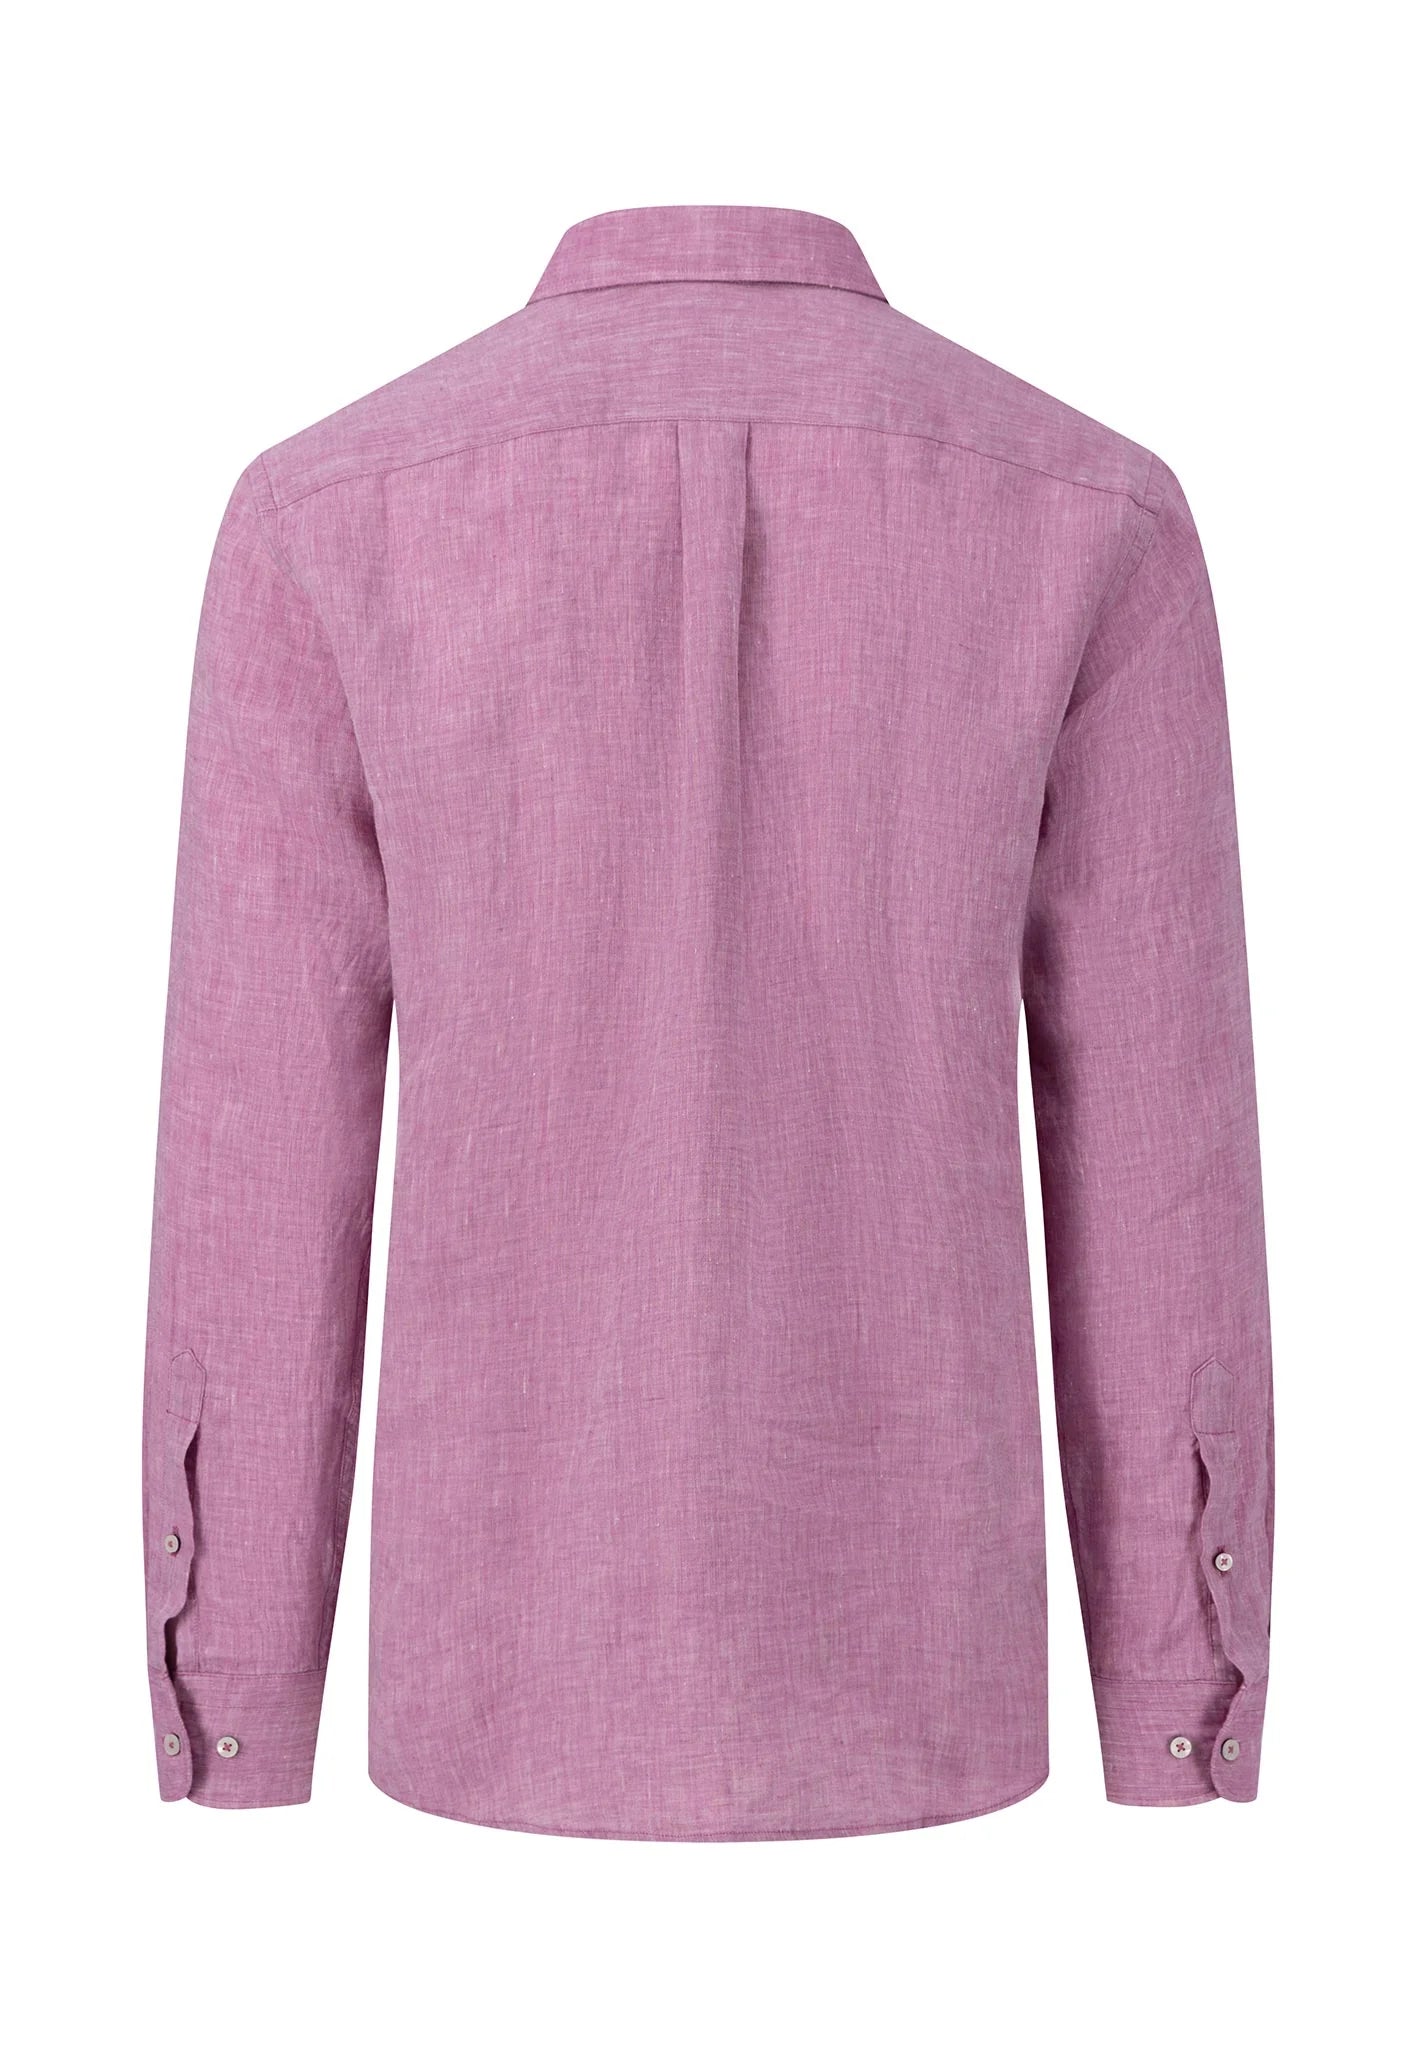 FYNCH HATTON Pure Linen Shirt - Men's – Dusty Lavender